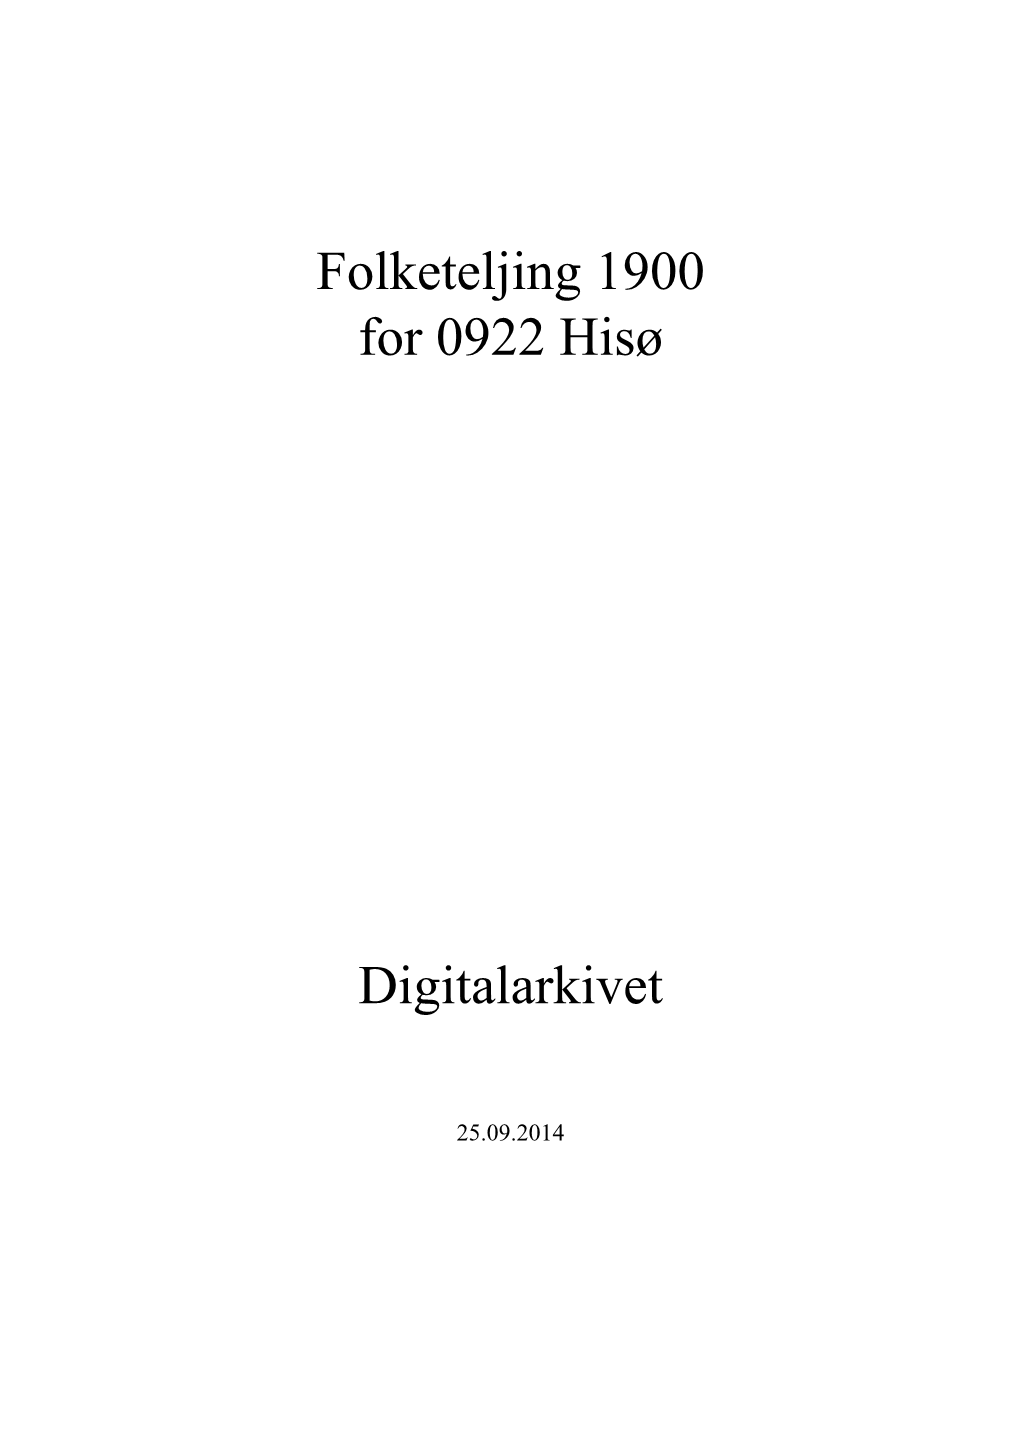 Folketeljing 1900 for 0922 Hisø Digitalarkivet